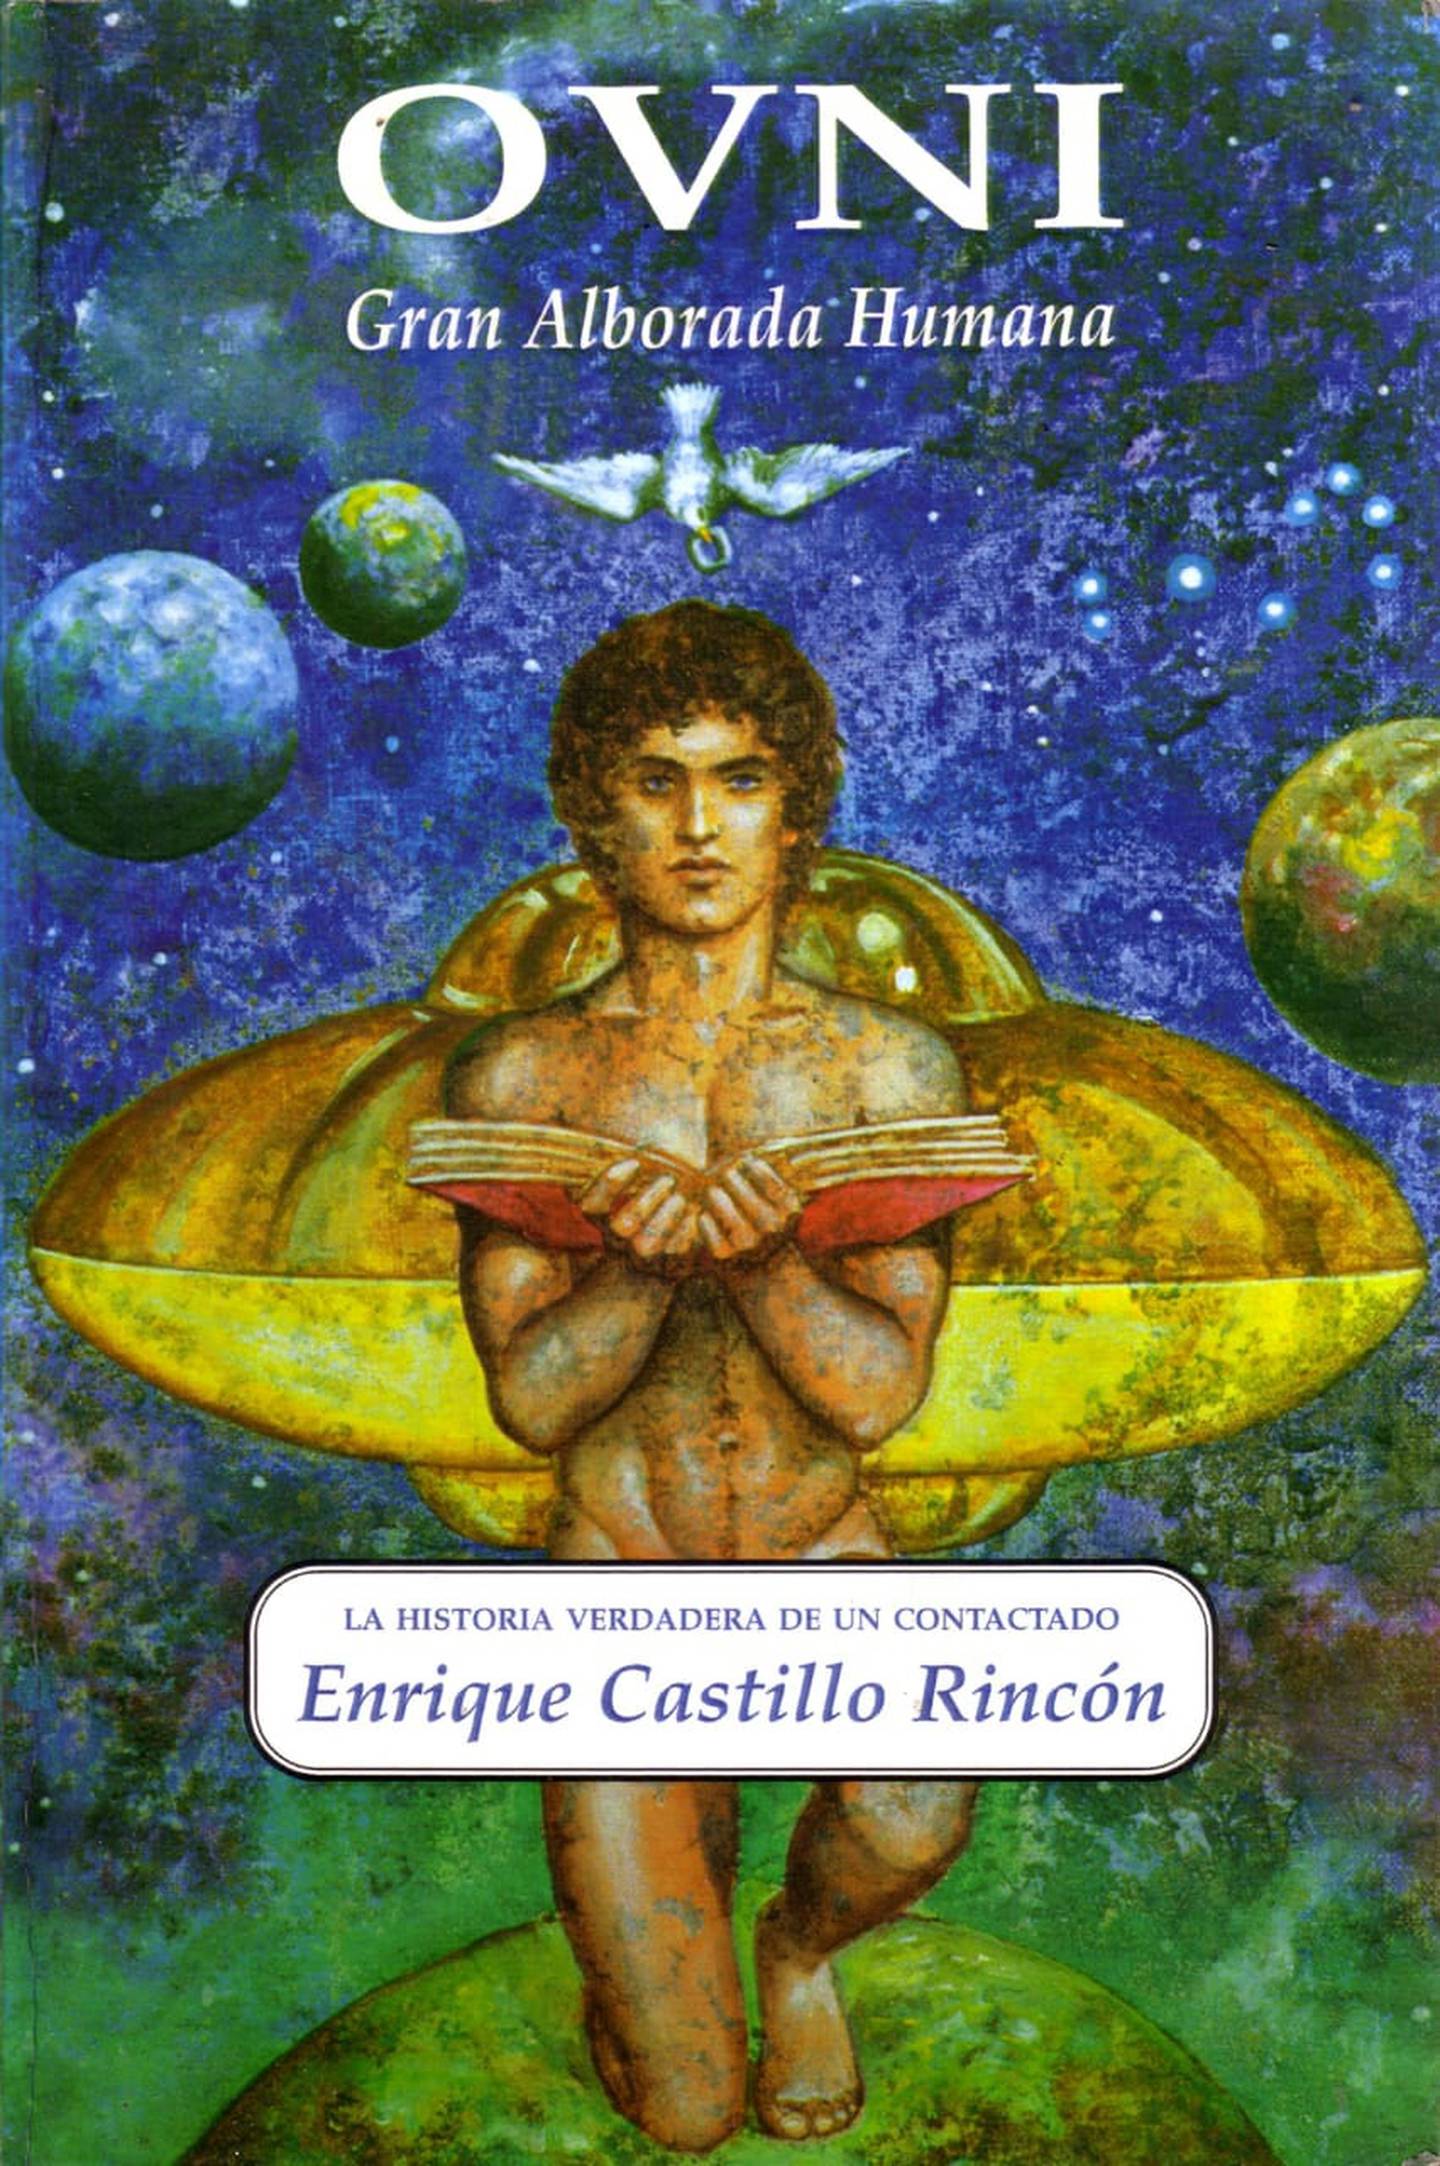 Enrique Castillo, contactado